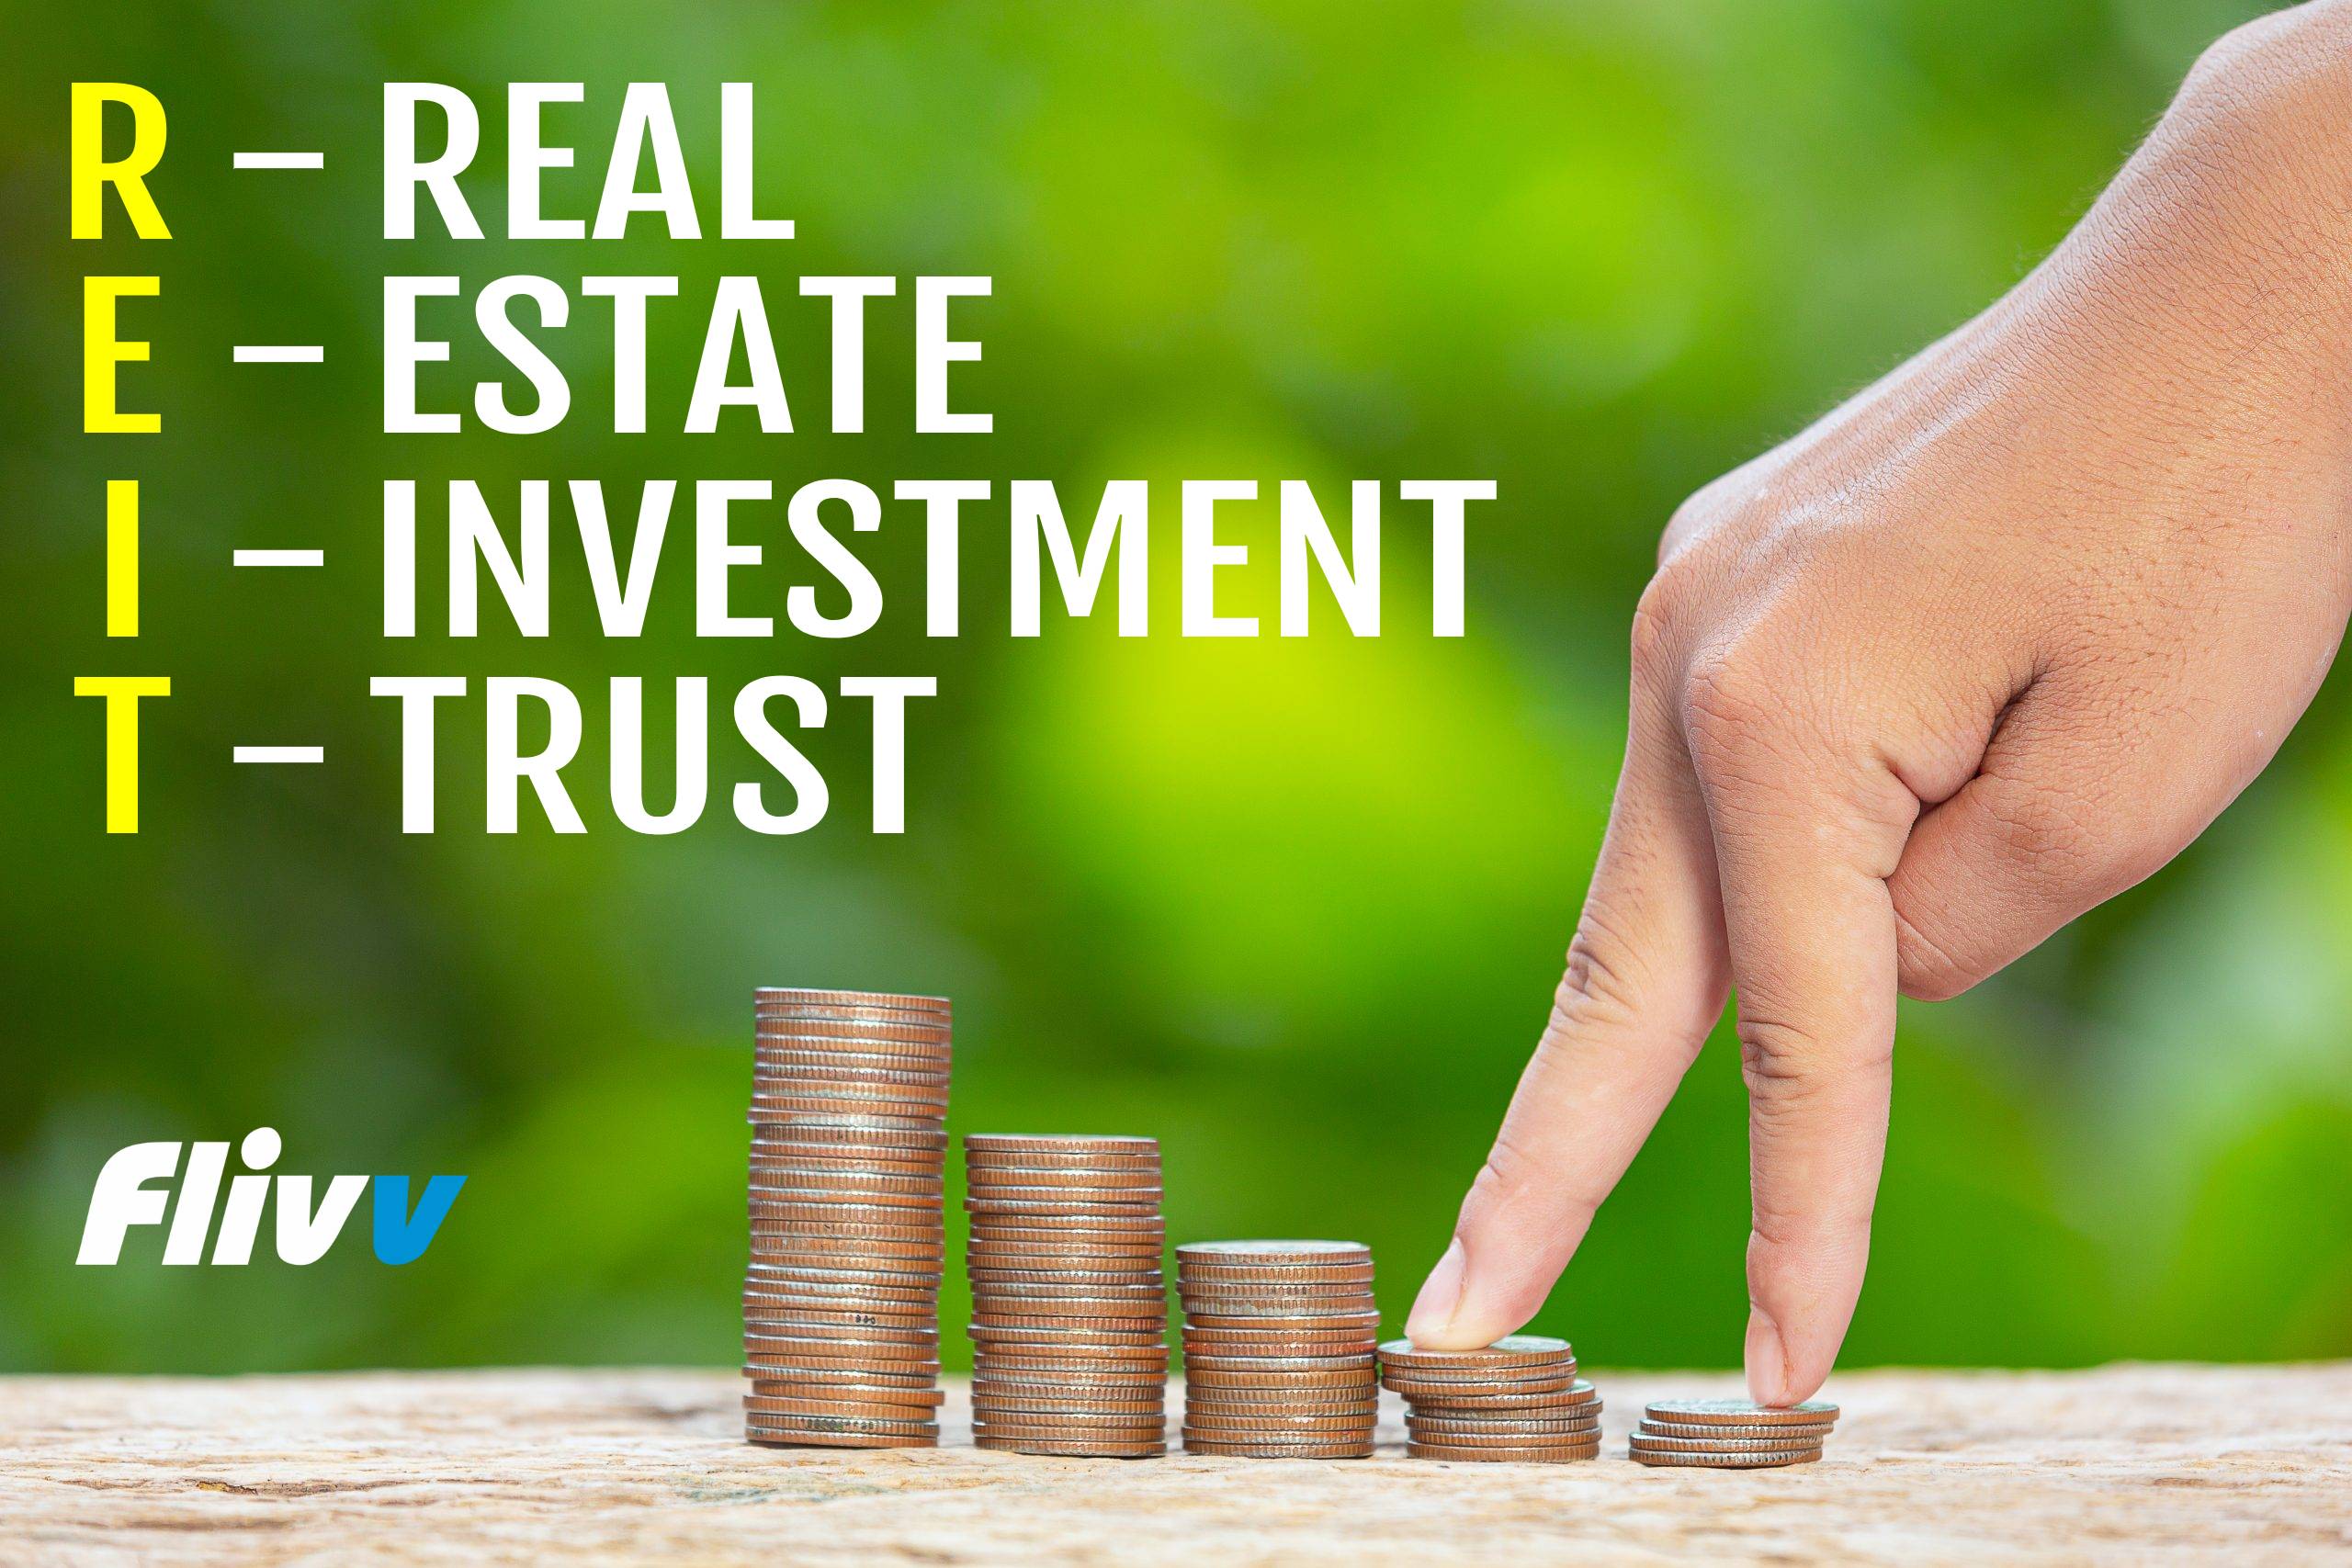 Real Estate Investment Trust (REIT)